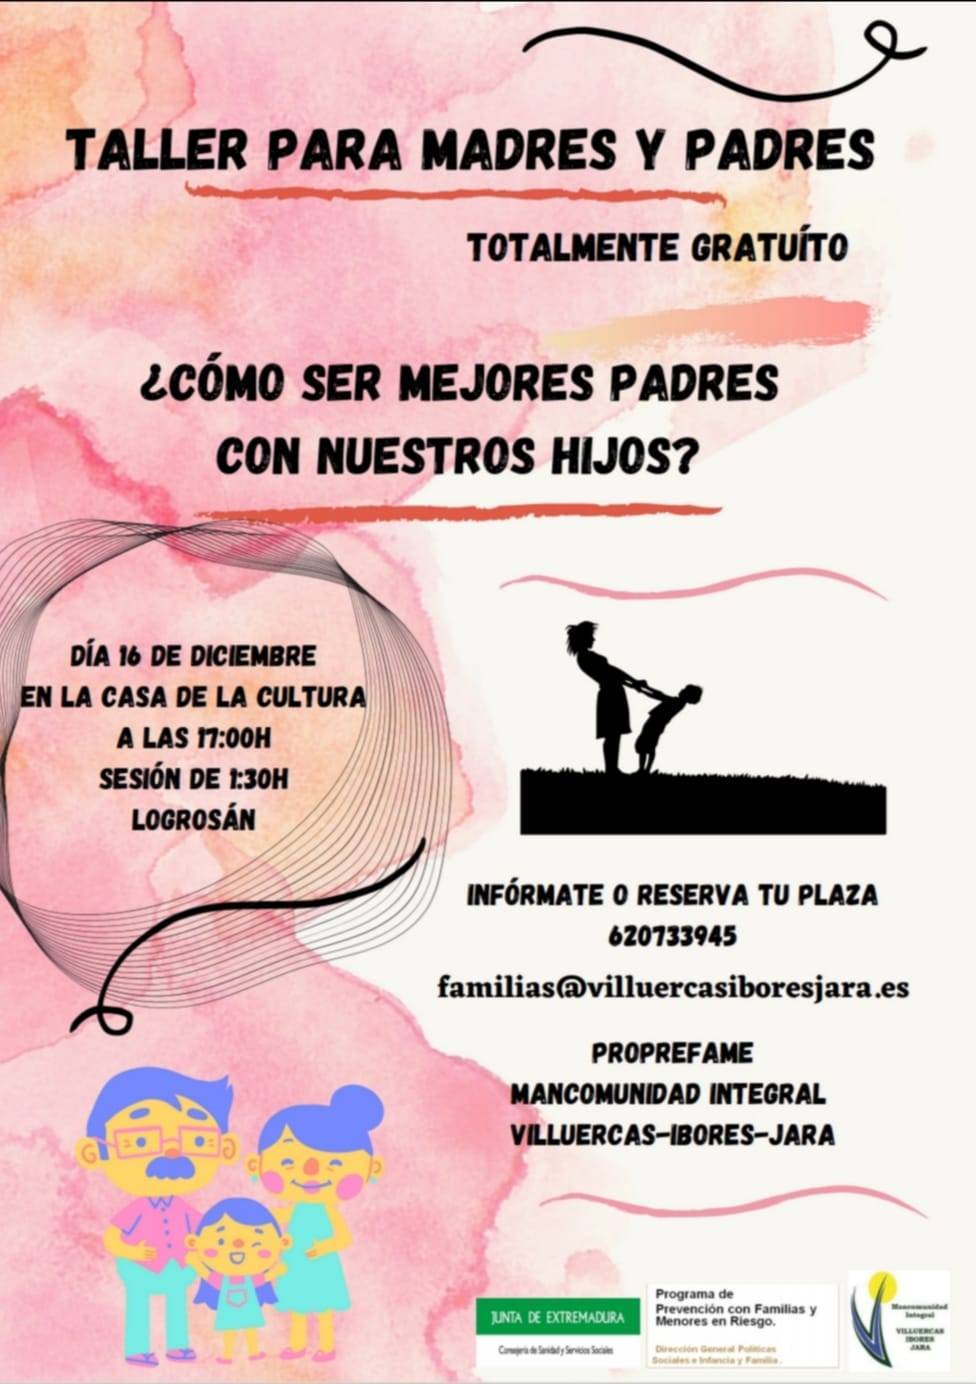 Taller para madres y padres (2020) - Logrosán (Cáceres)